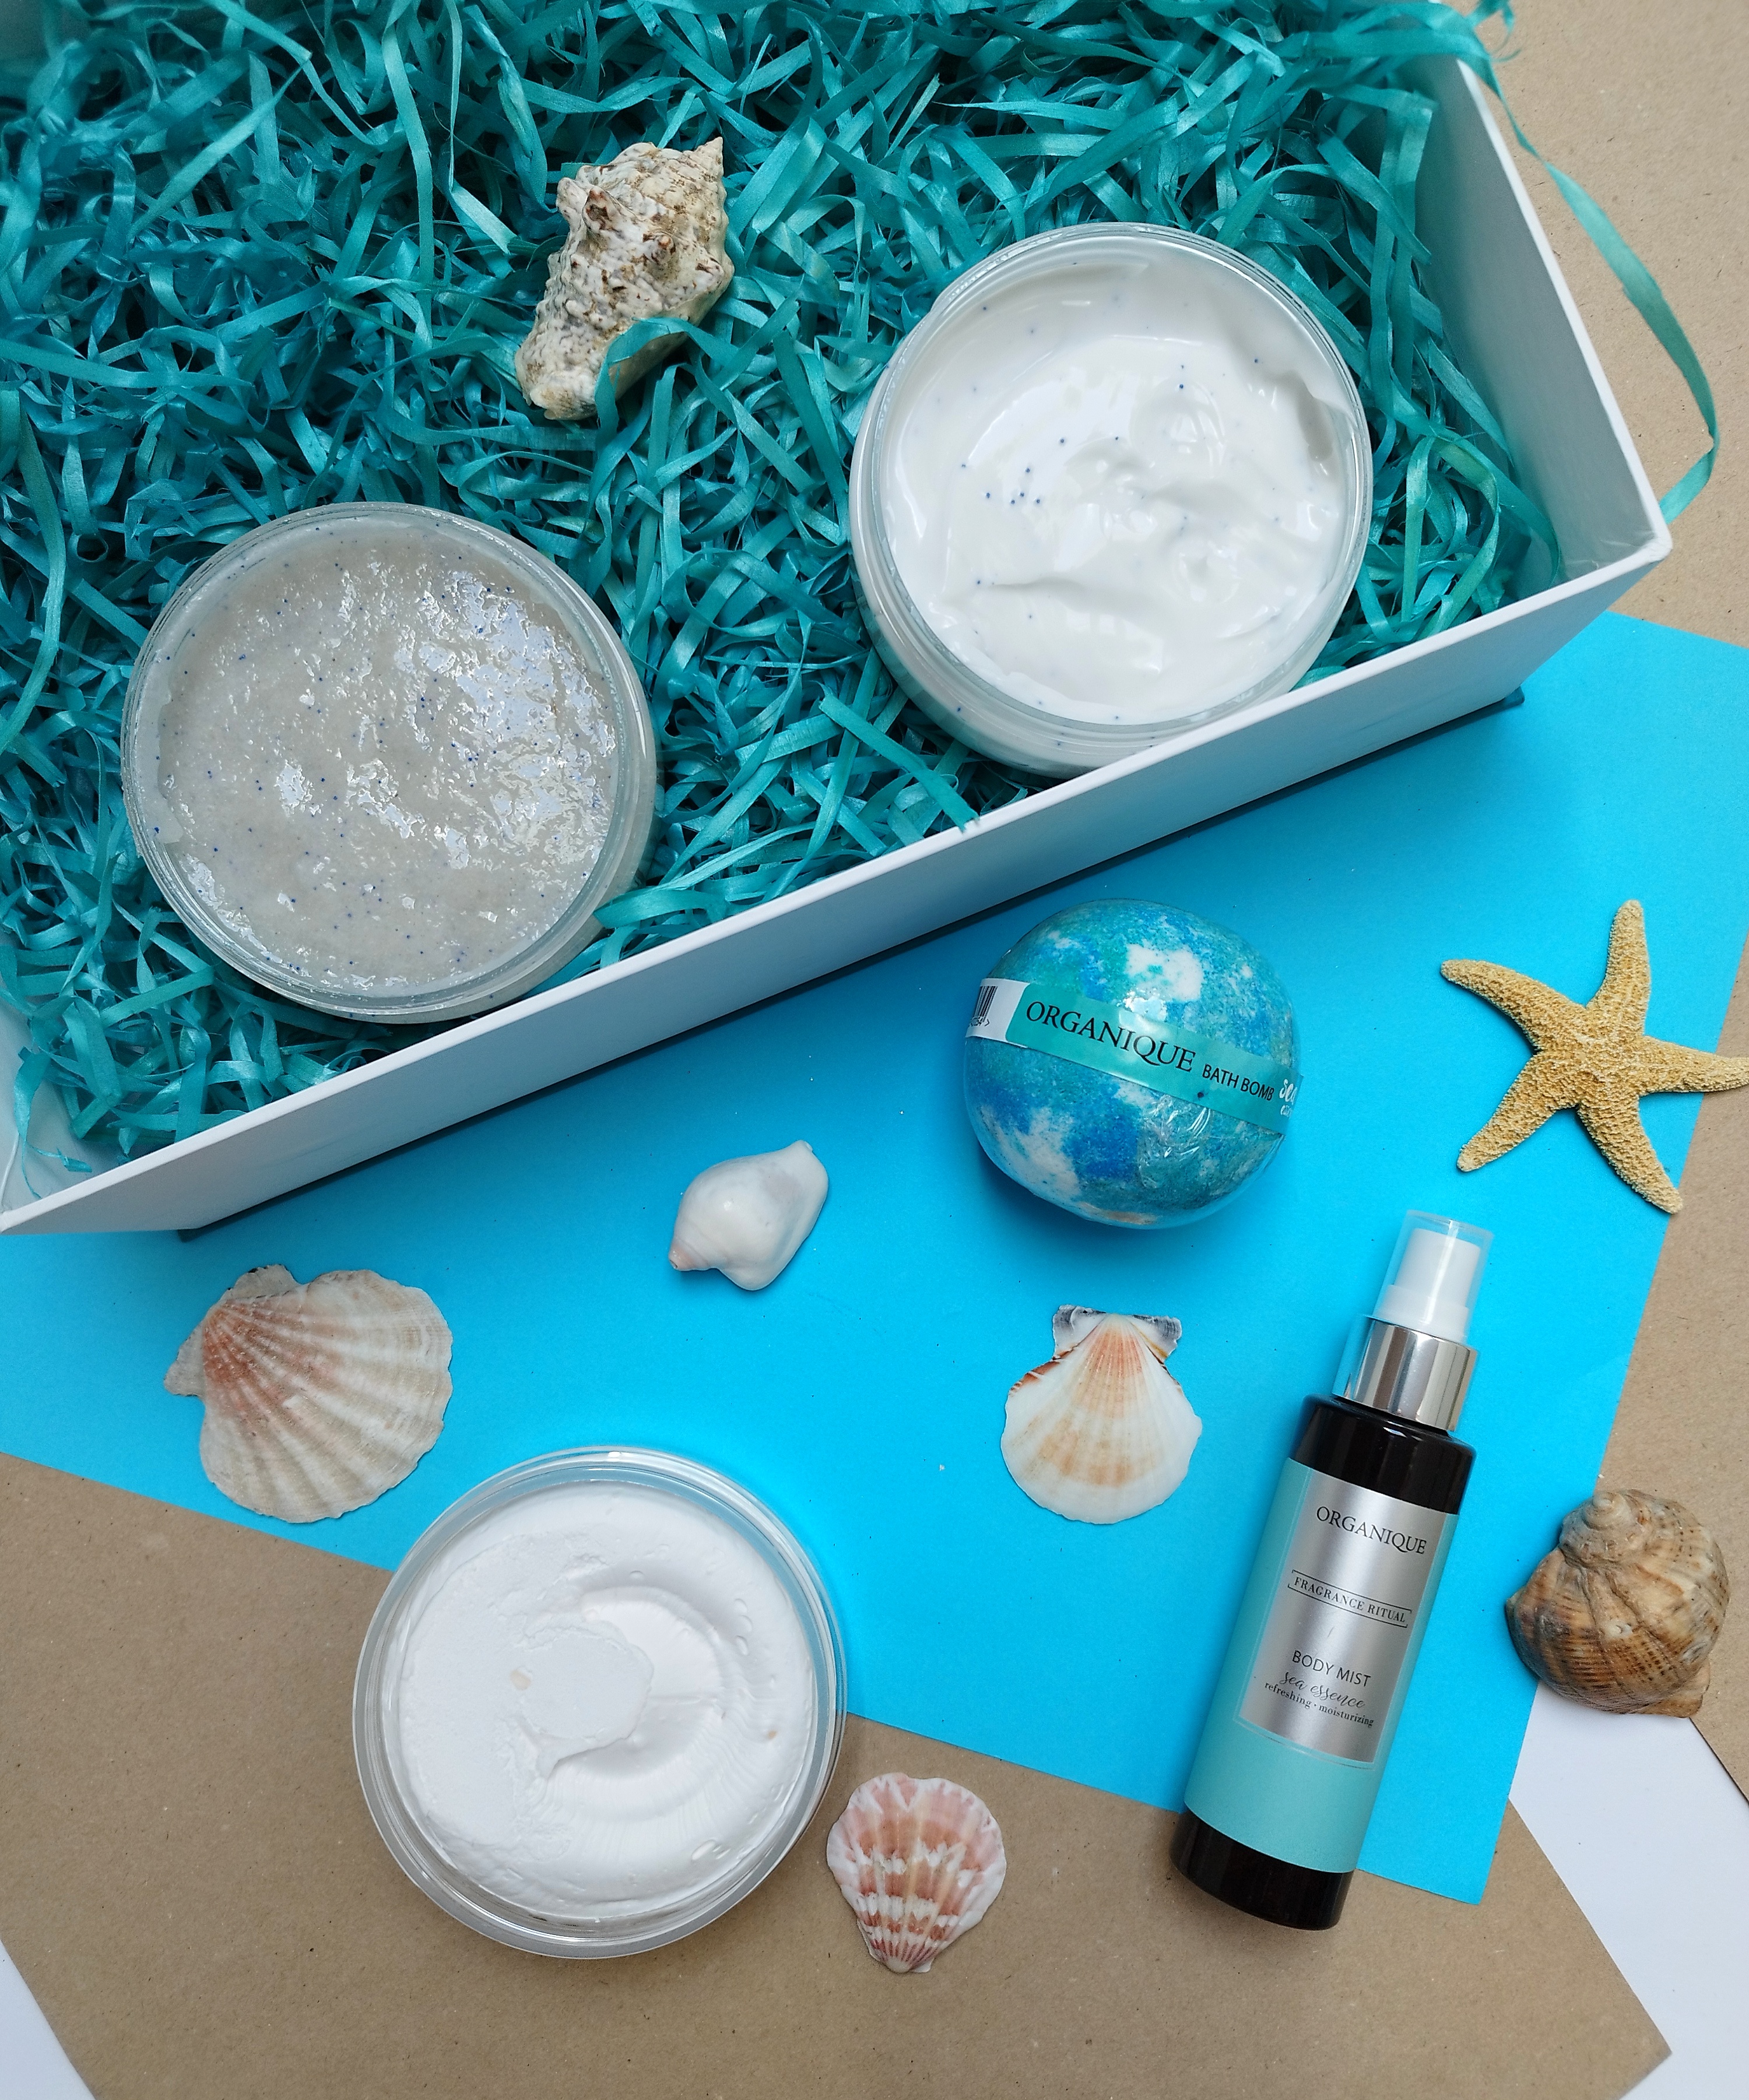 Sea Essence - zatrzymaj lato na dłużej z kosmetykami Organique